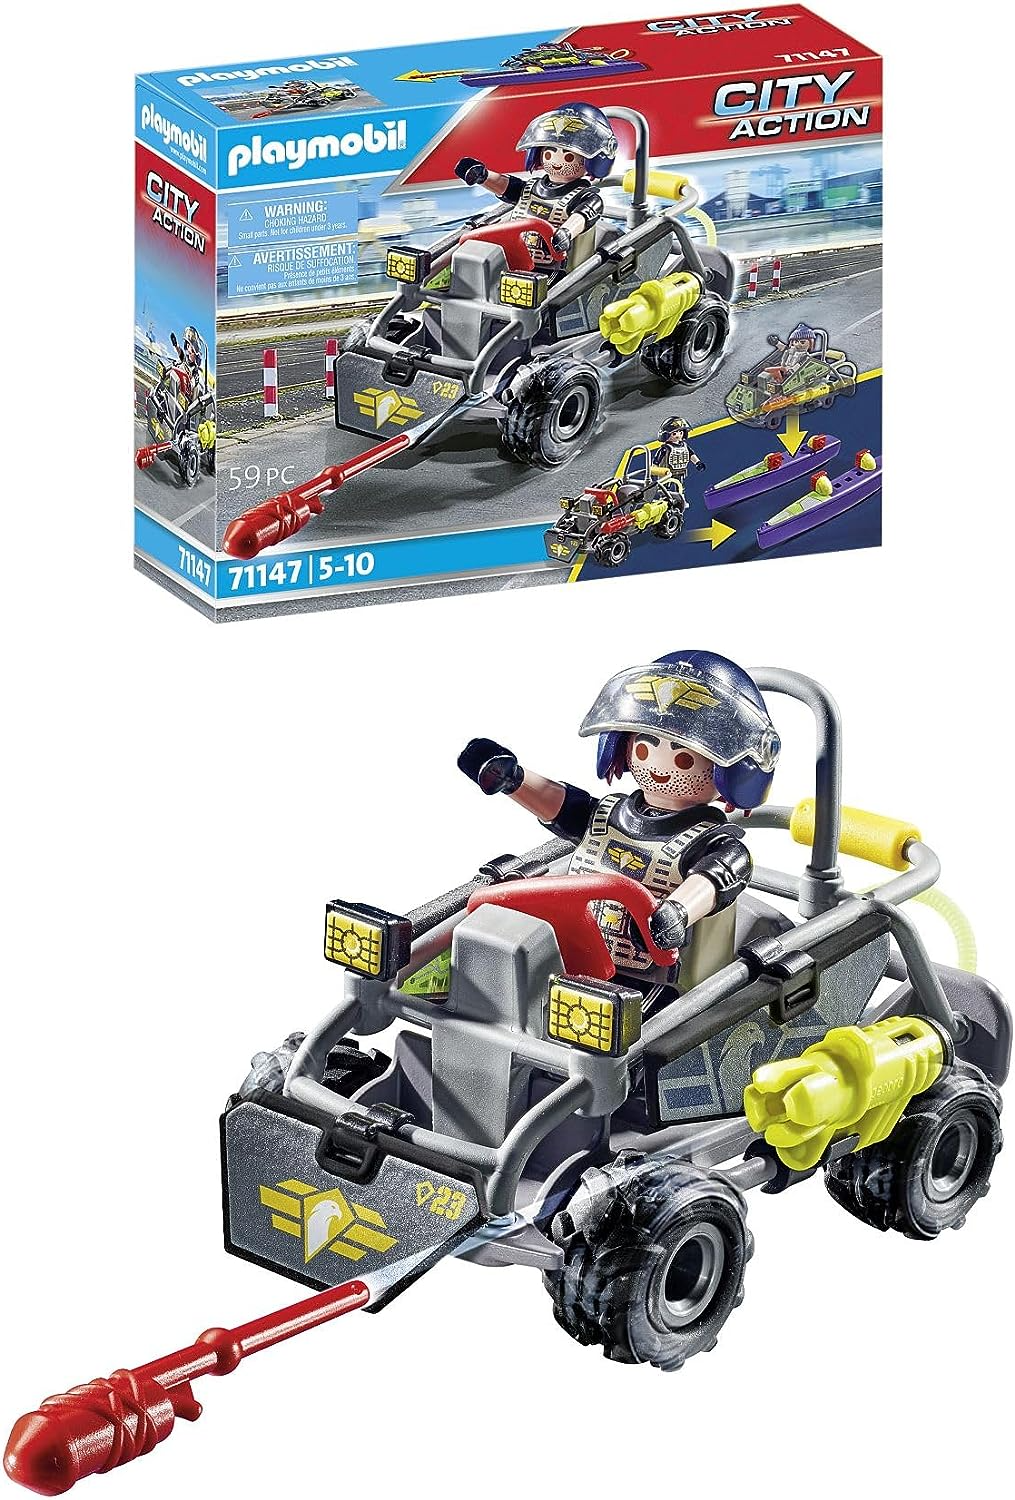 Playmobil 71147 City Action Tactical Multi-Terrain Quad, lancha SWAT conversível, encenação divertida e imaginativa, conjunto de jogos adequado para crianças de 5 anos ou mais